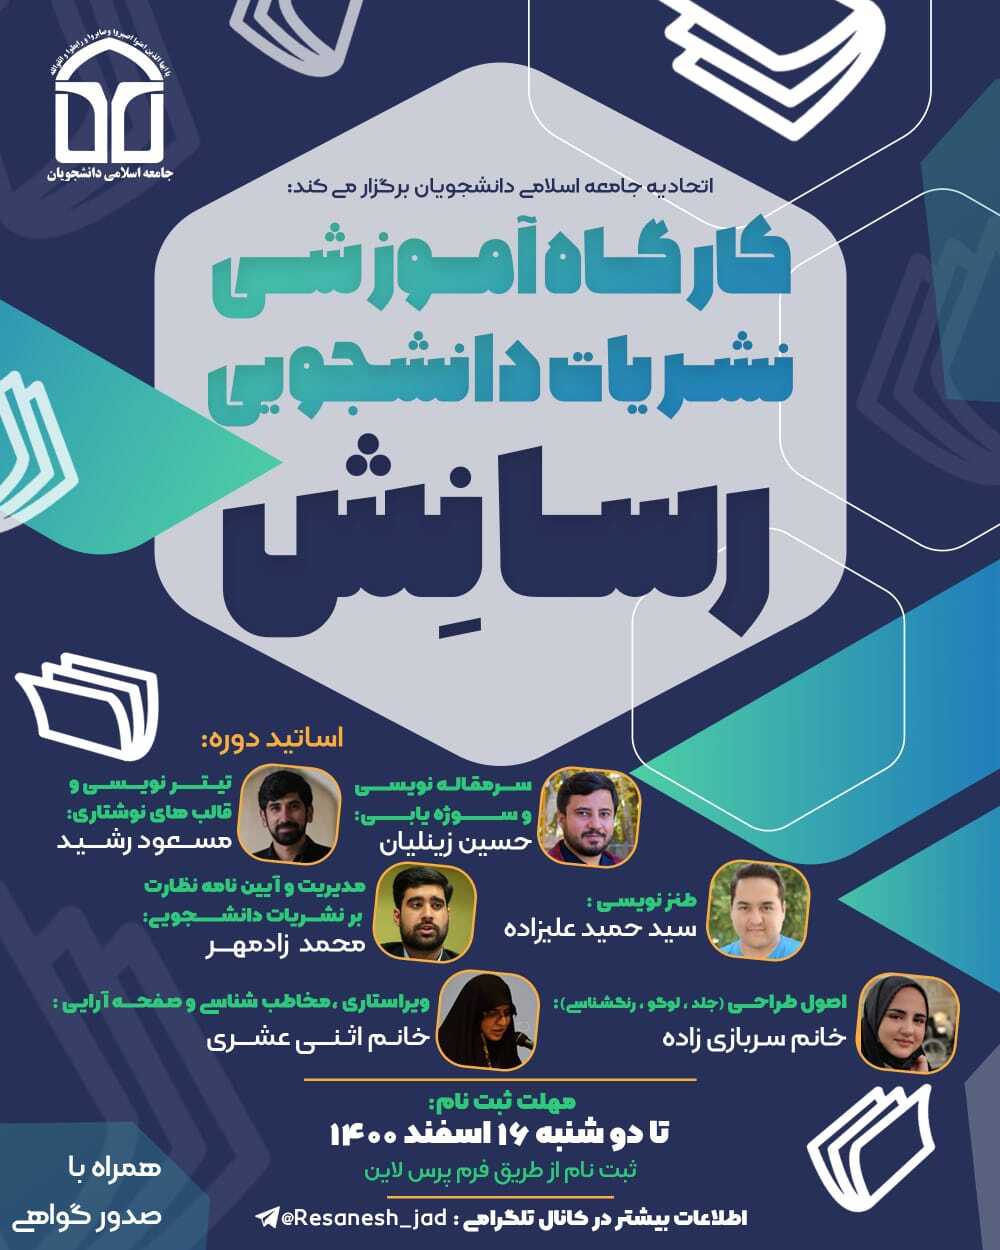 برگزاری کارگاه آموزش نشریات دانشجویی «رسانش» از سوی اتحادیه جامعه اسلامی دانشجویان